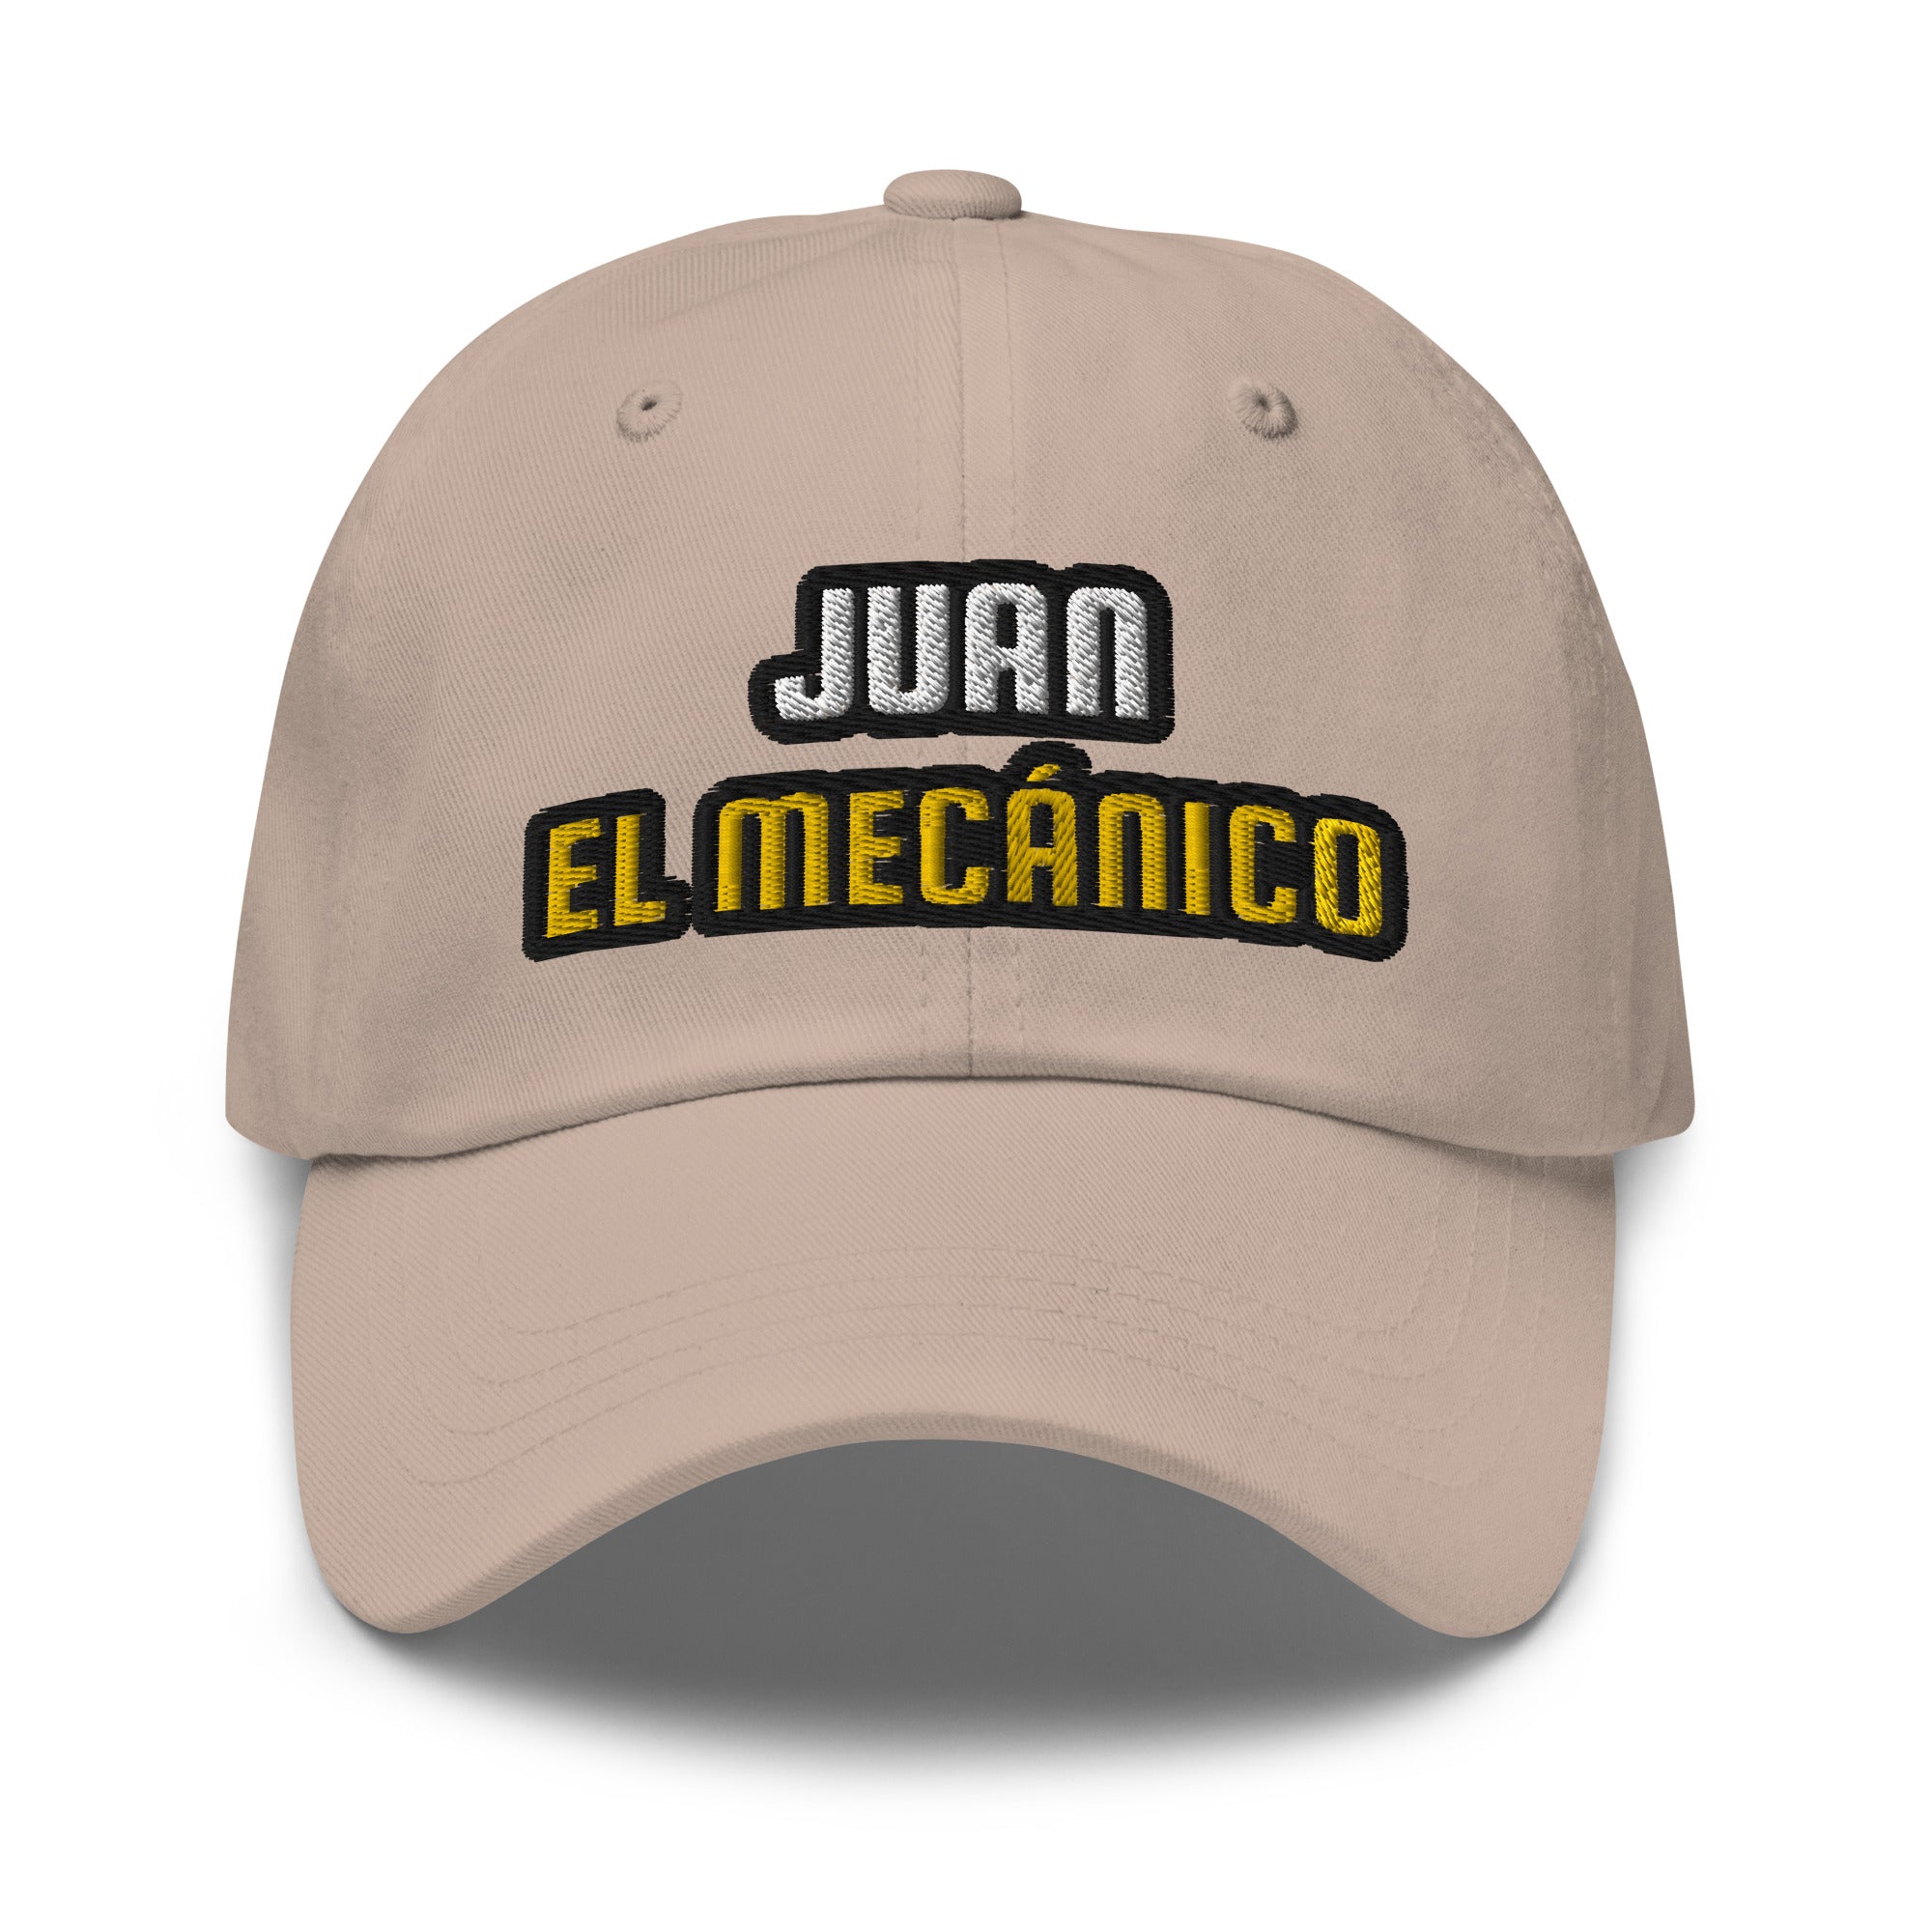 Juan el Mecánico | Gorra dad hat